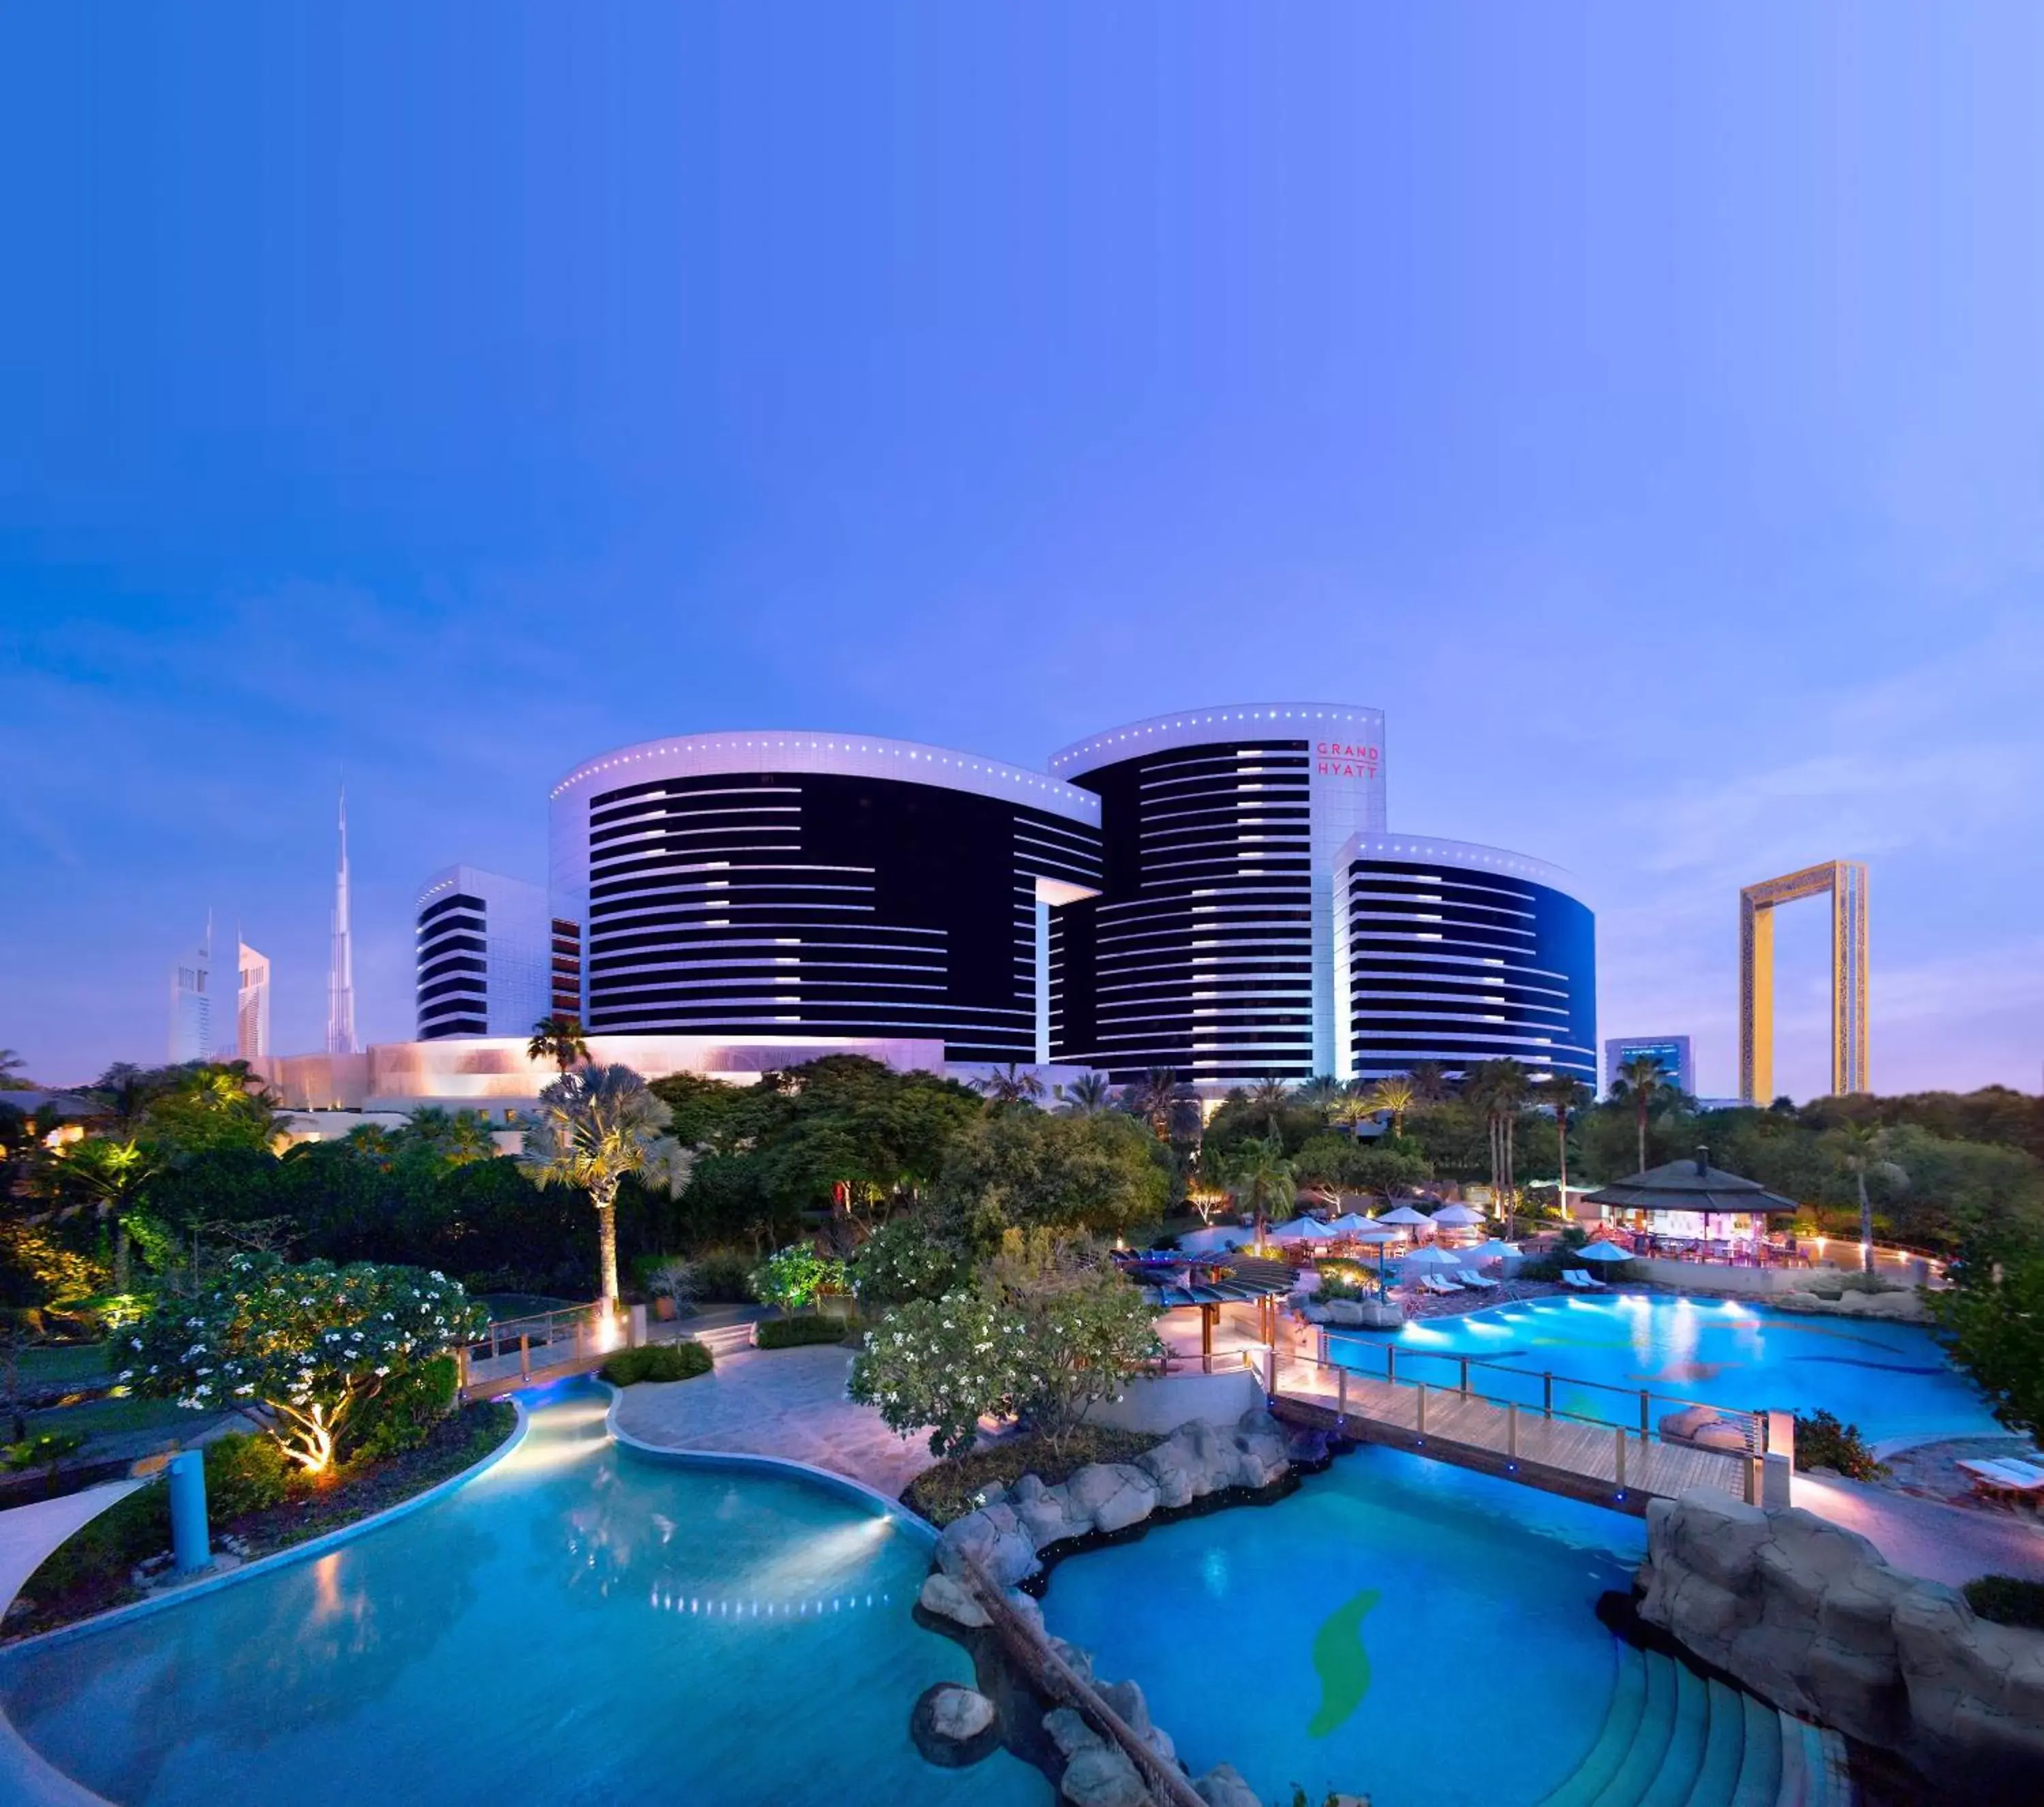 Property building, Pool View in Grand Hyatt Dubai